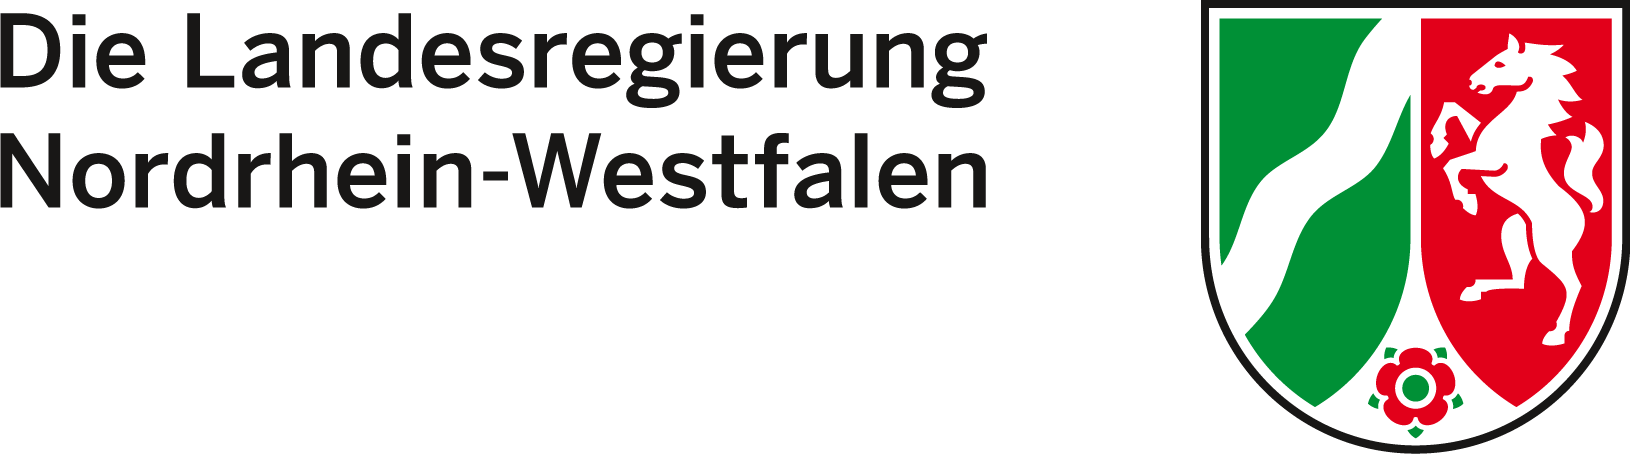 Die Landesregierung Nordrhein-Westfalen